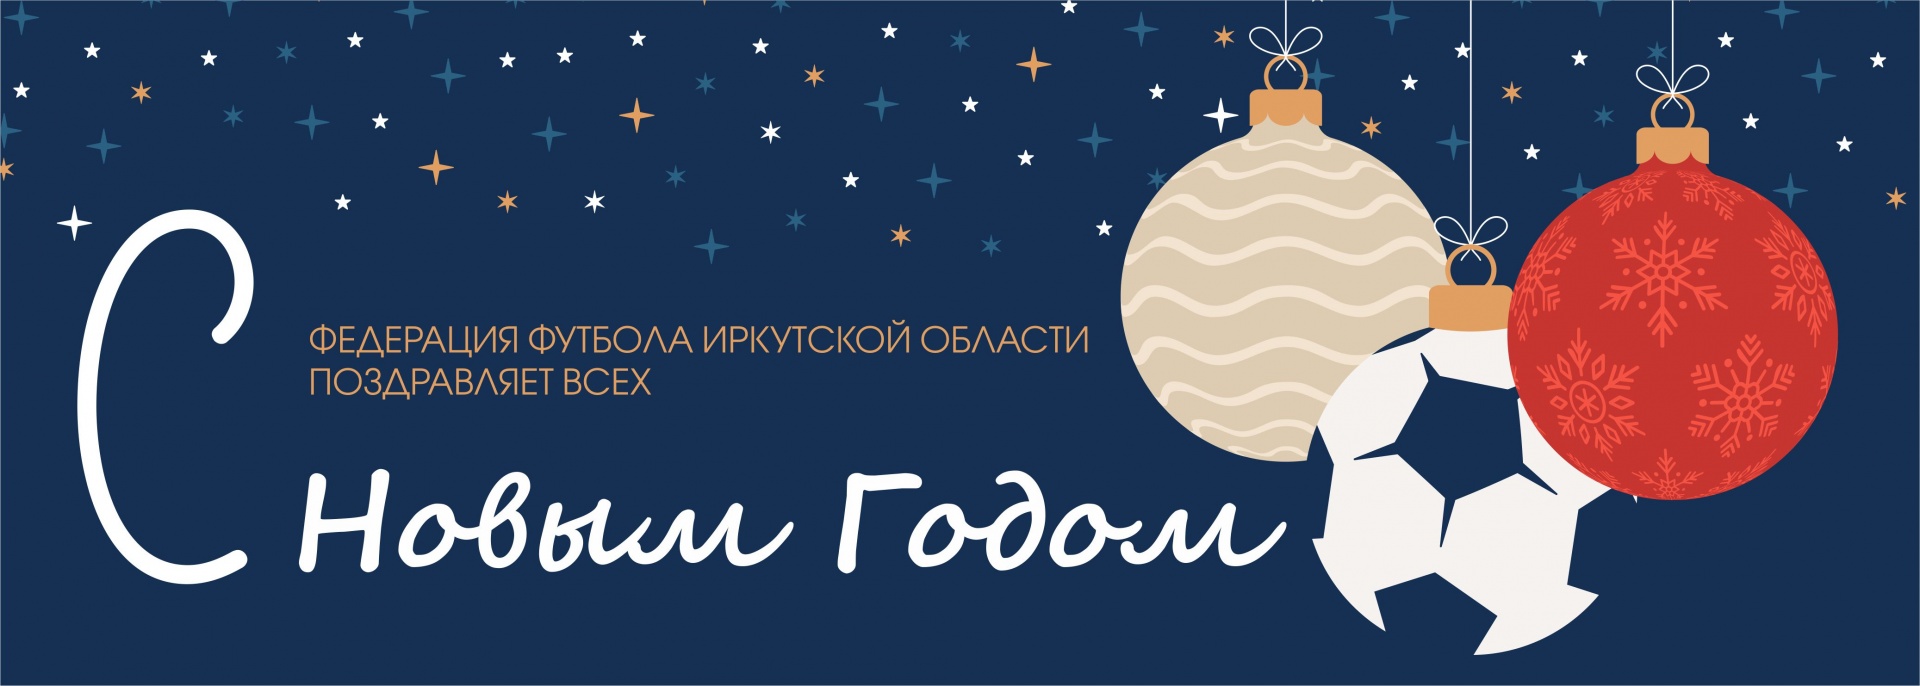 Федерация Футбола Иркутской Области поздравляет всех любителей футбола с Новым Годом!